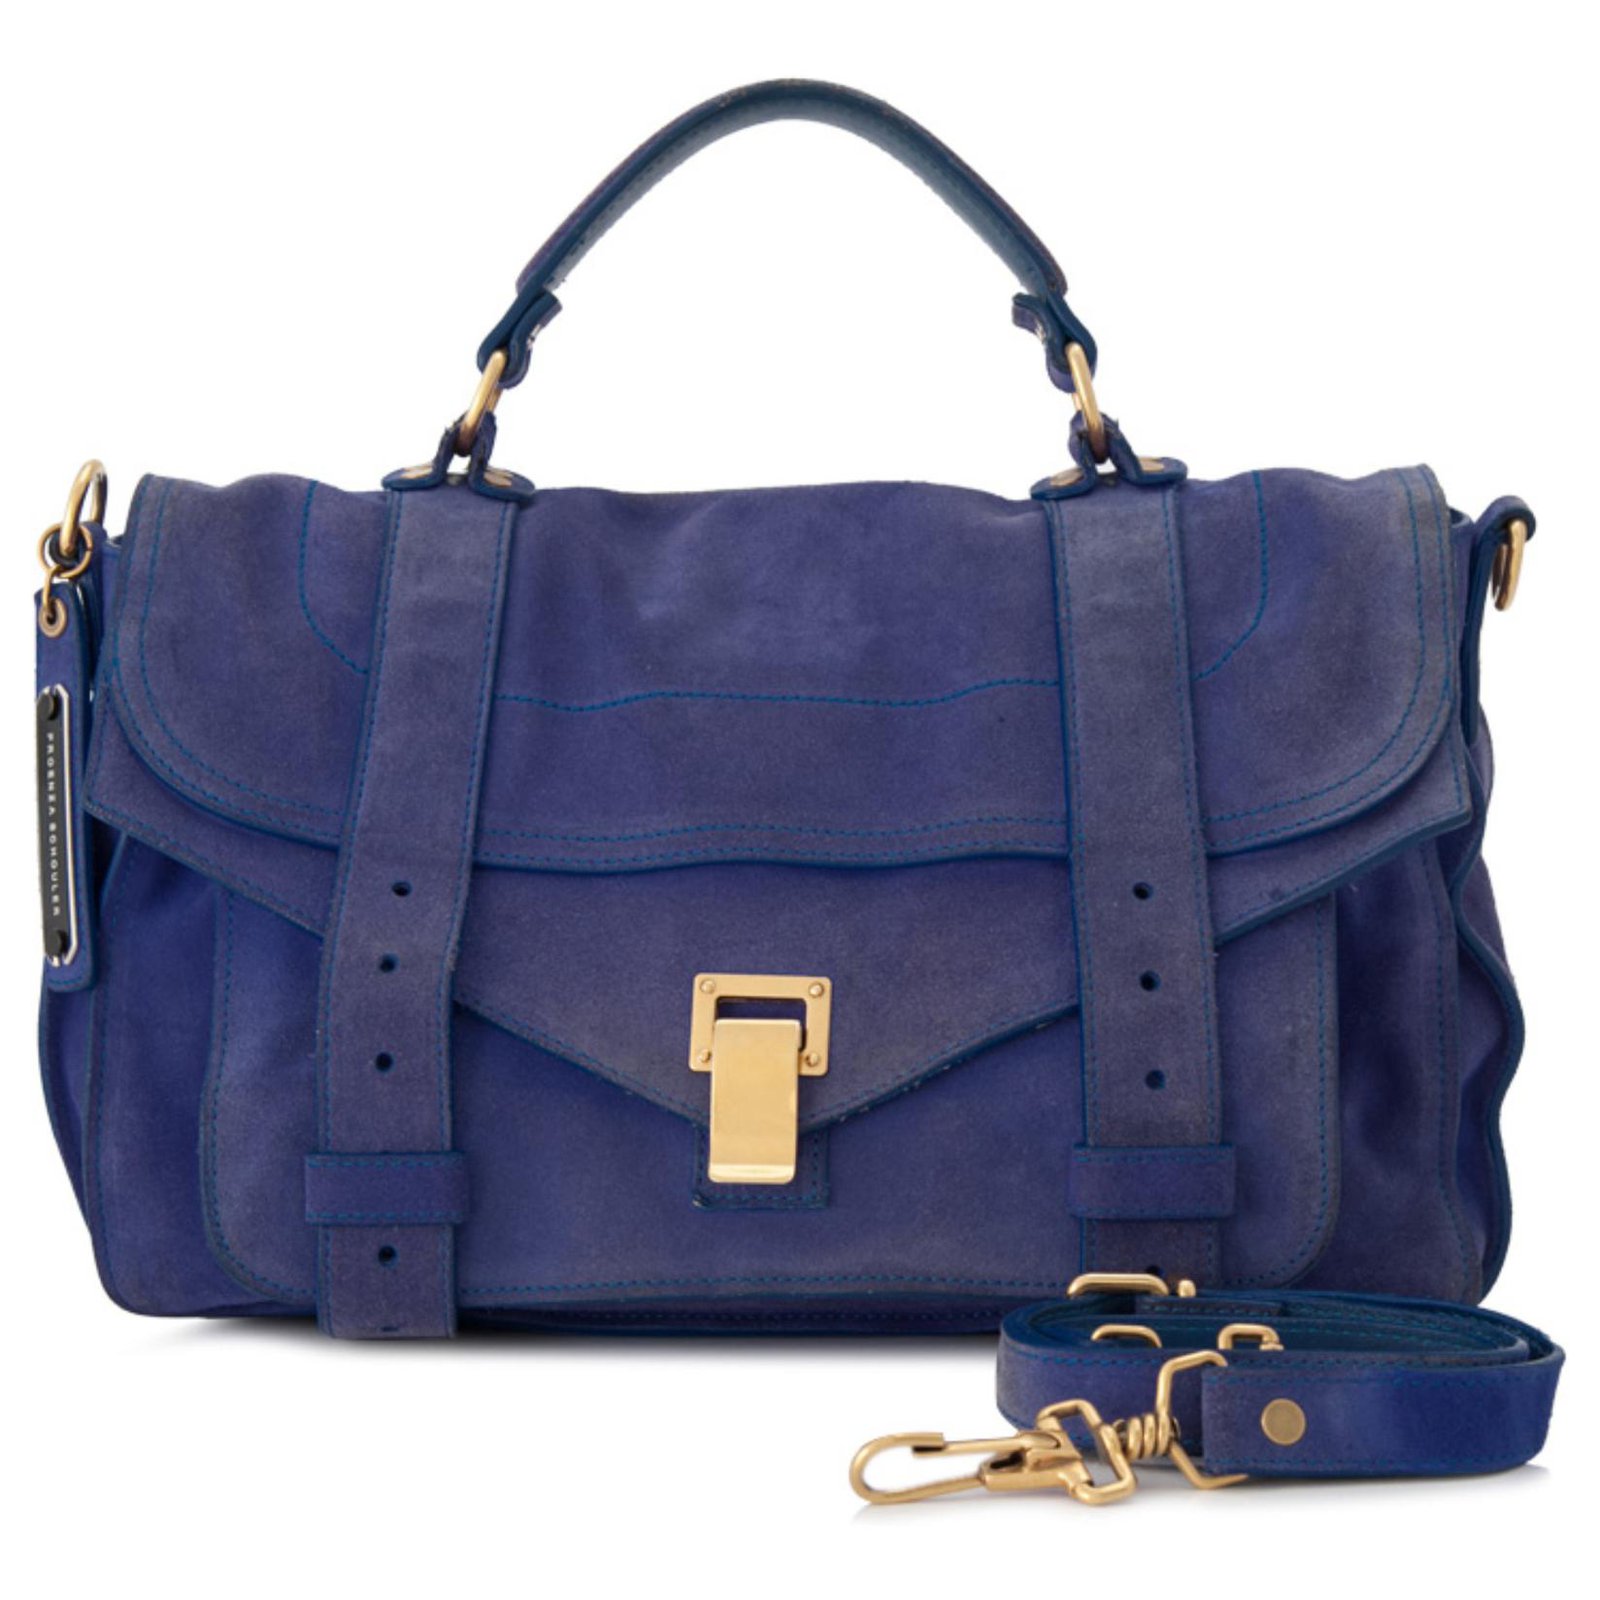 Proenza Schouler PS1 Top Handle Bag